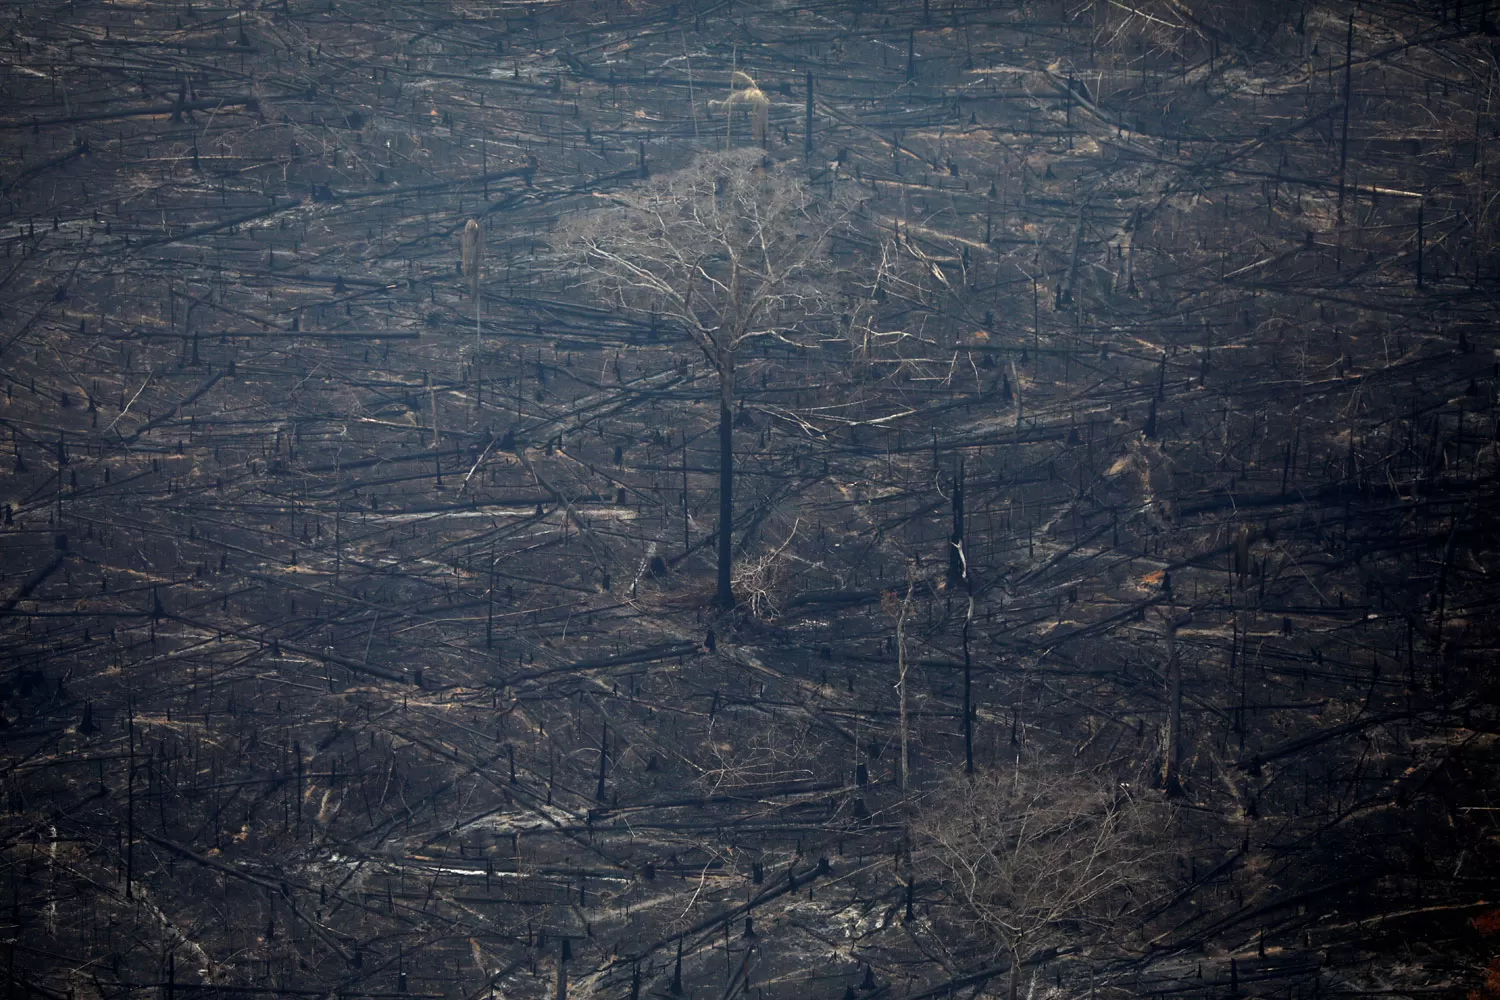 DESASTRE. Una imagen aérea retrata la destrucción de la selva del Amazonia en Brasil, por el fuego. REUTERS